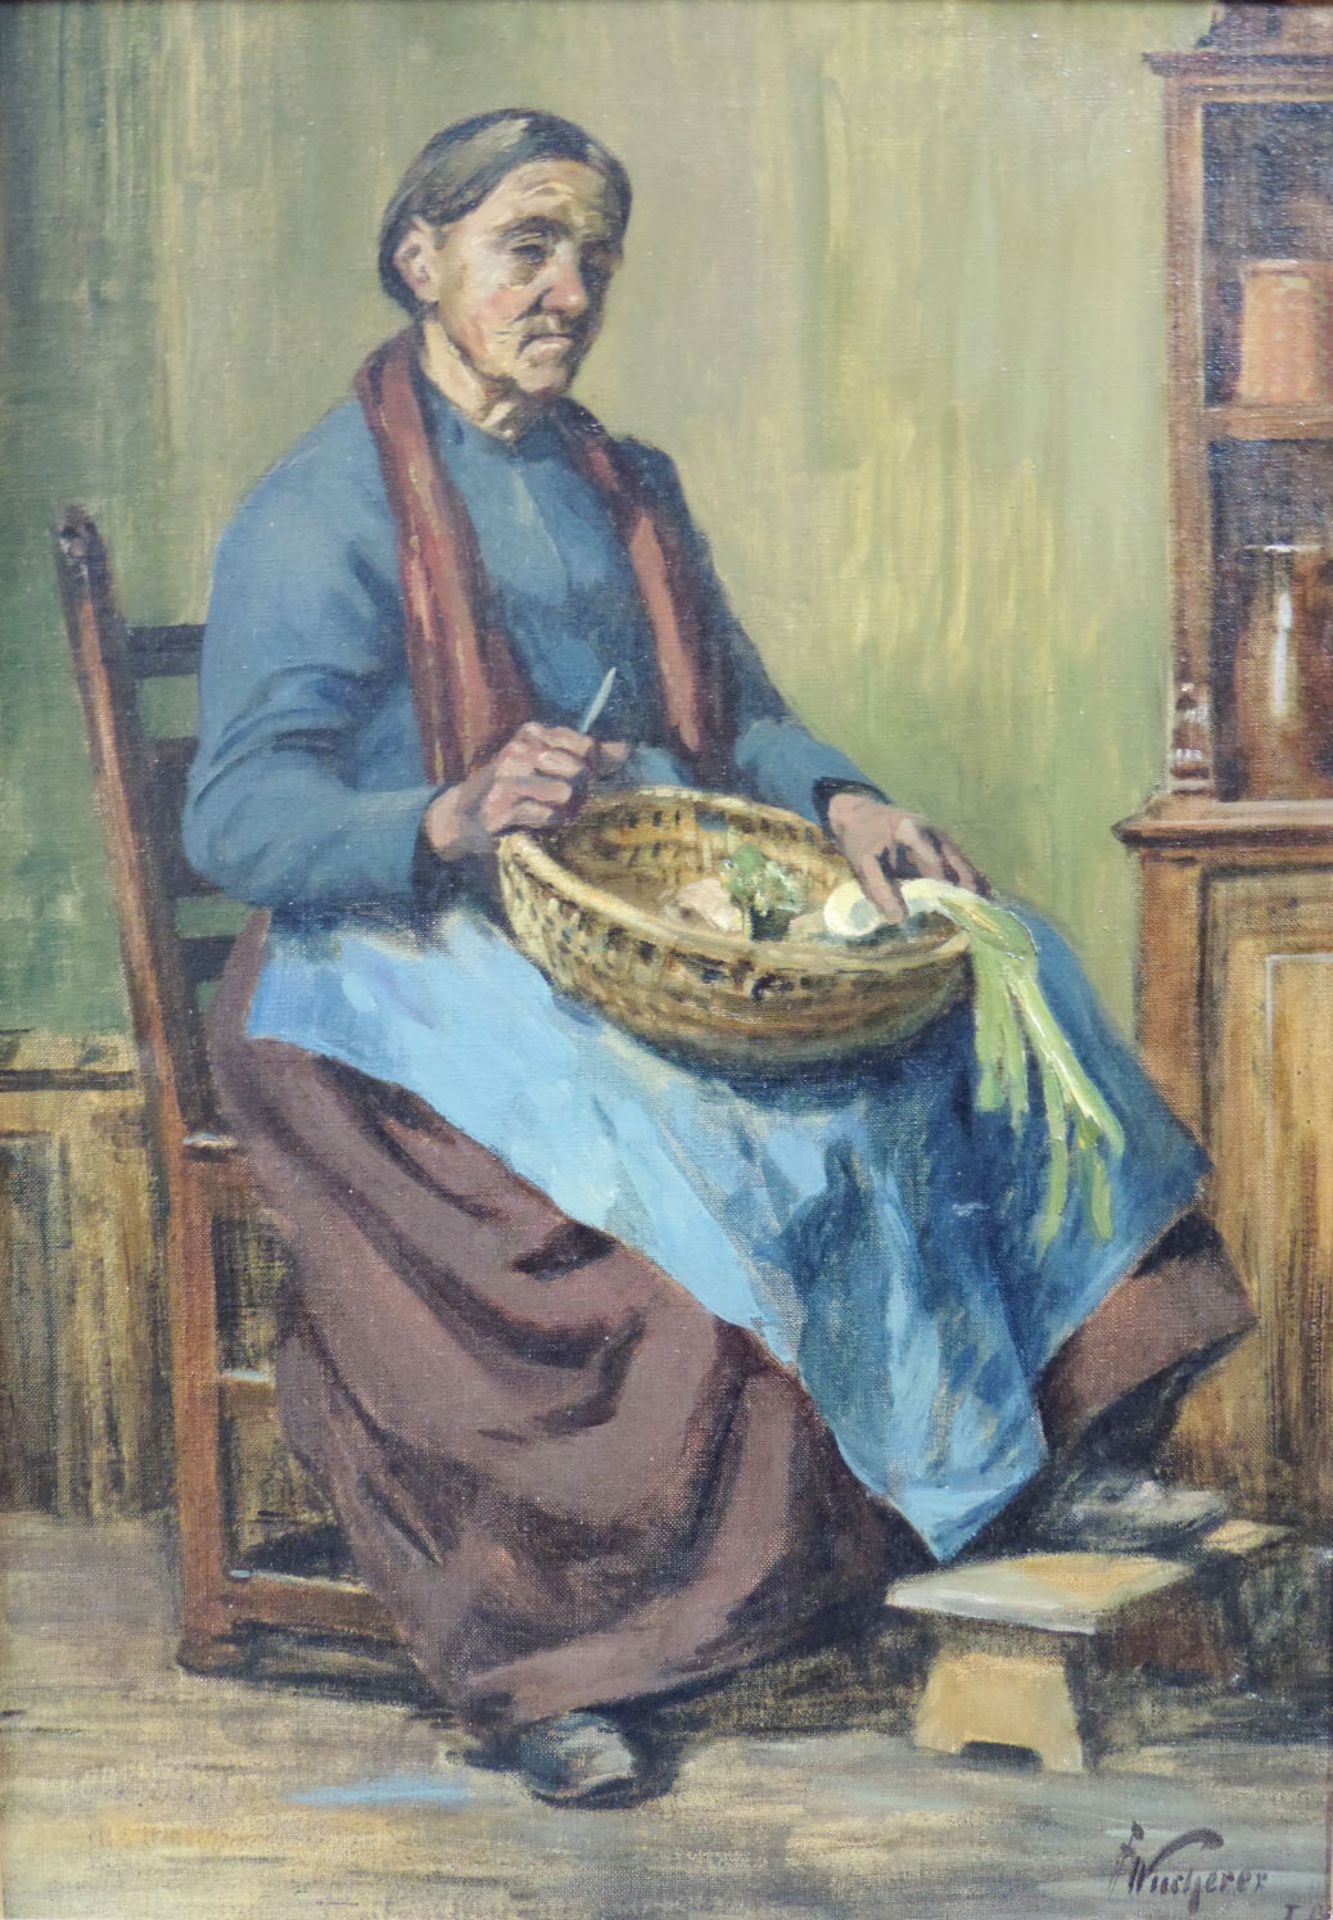 Fritz WUCHERER (1873 - 1948). Frau beim Gemüseputzen. Fritz WUCHERER (1873 - 1948),46,5 cm x 80